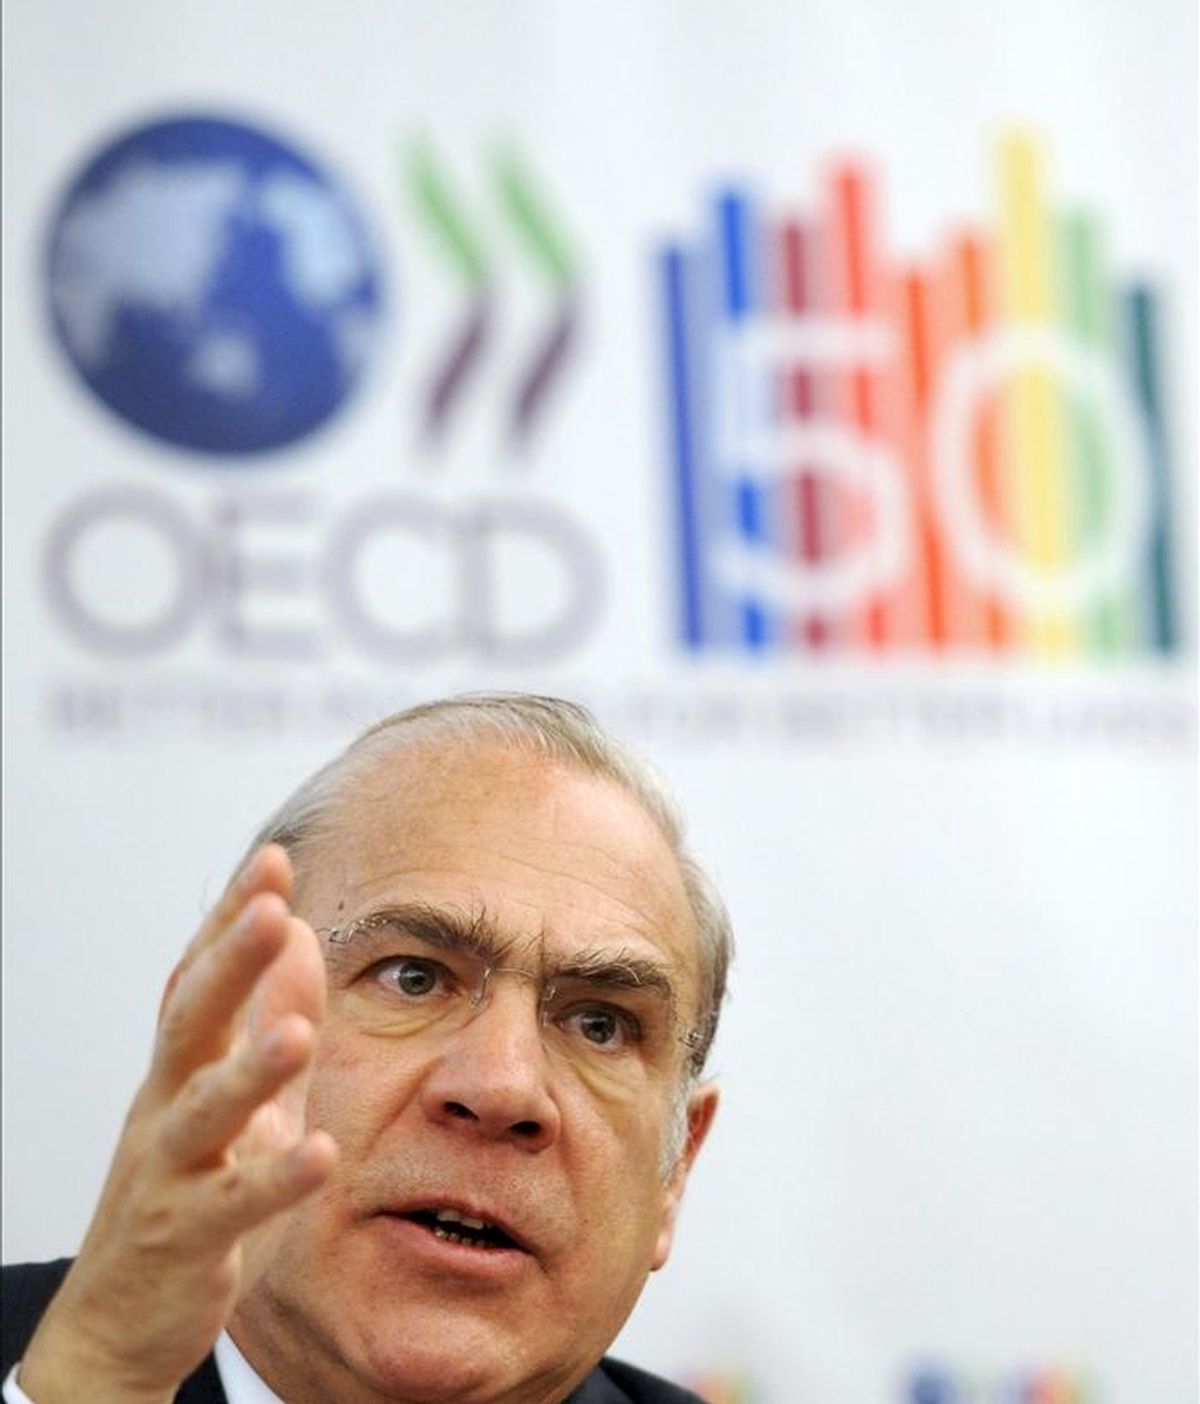 El secretario general de la Organización para la Cooperación y el Desarrollo Económico (OCDE), Ángel Gurría, durante una rueda de prensa. EFE/Archivo